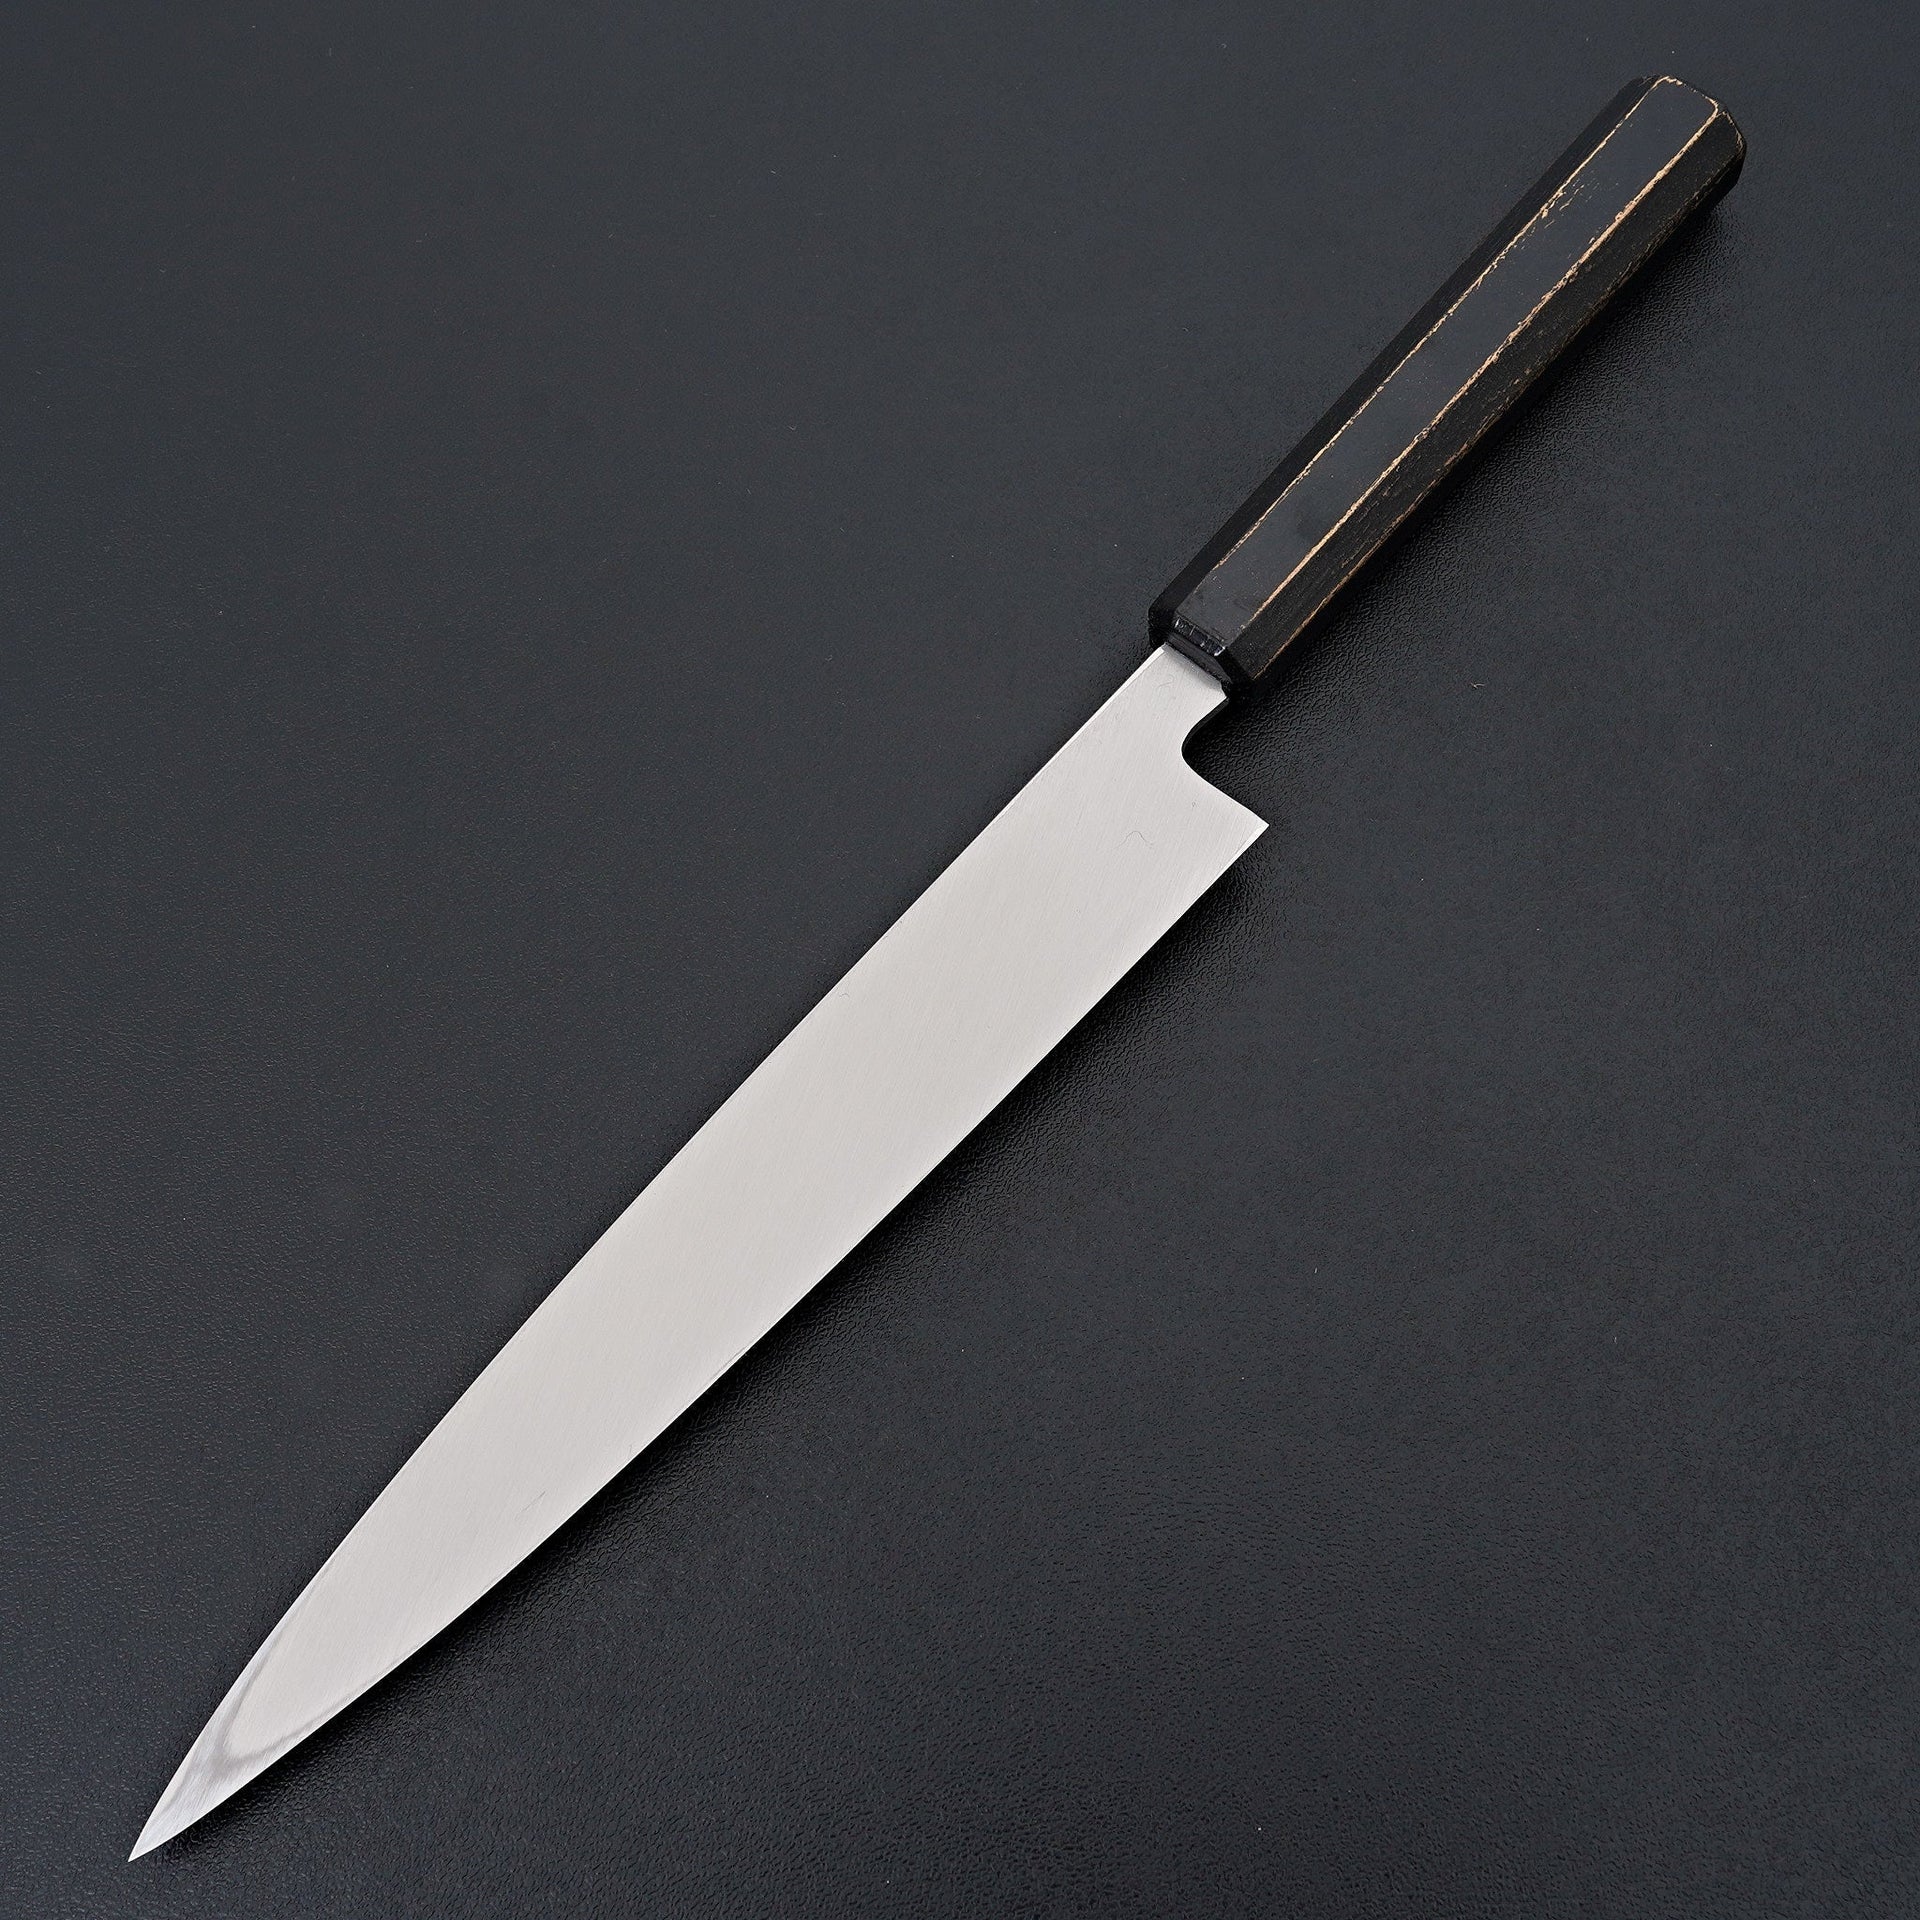 Sakai Takayuki Nanairo Black Gold Ink Yanagiba 210mm-Knife-Sakai Takayuki-Carbon Knife Co